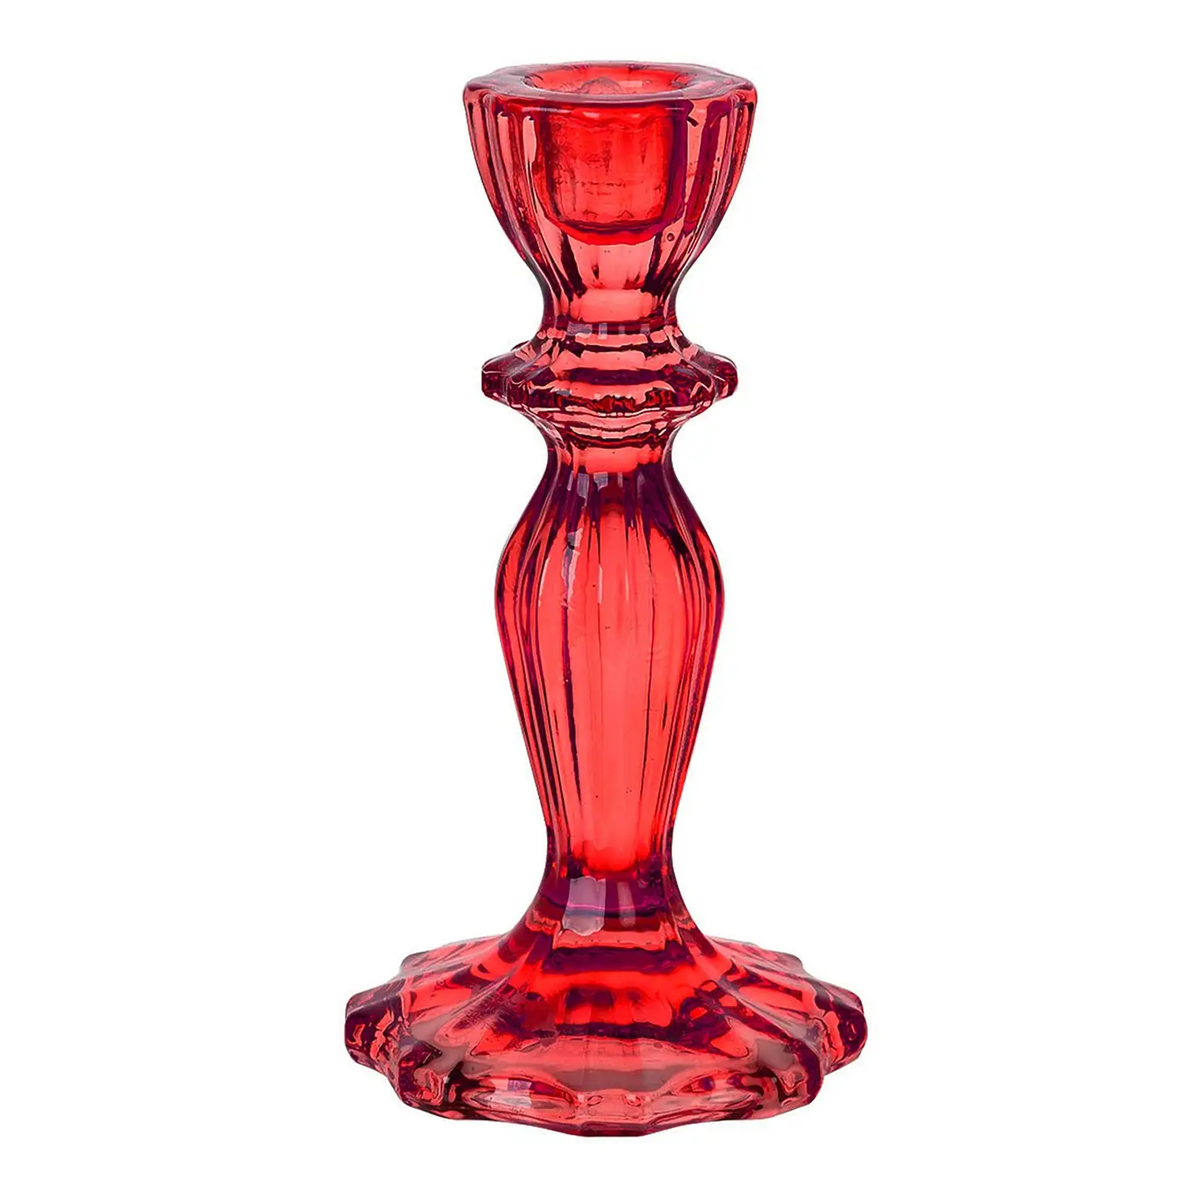 Vintage Glass Candlestick Holder - Red